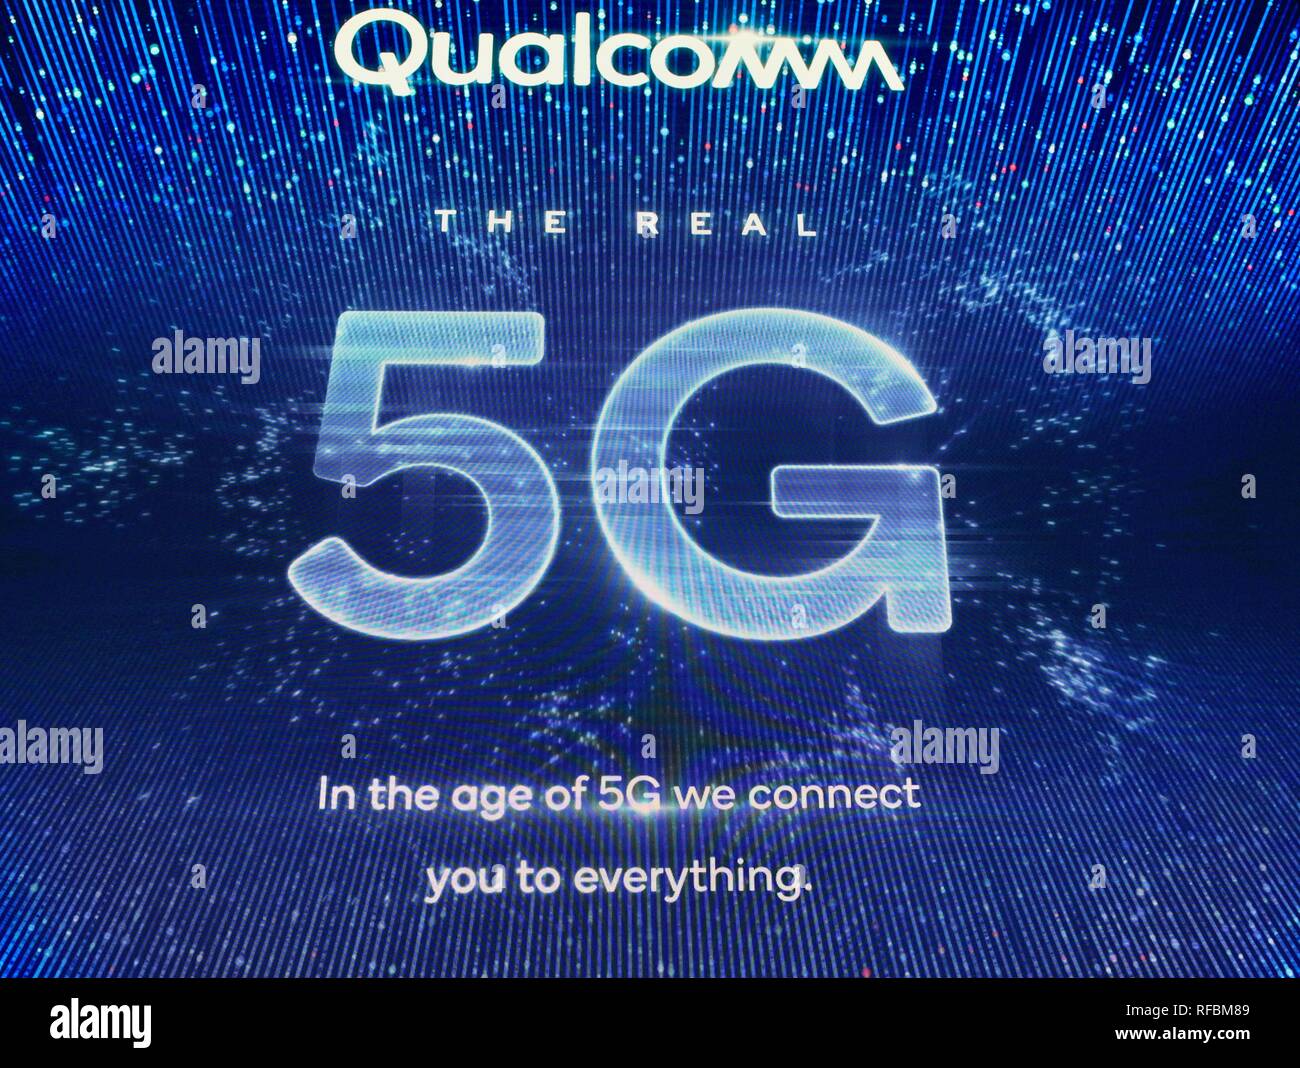 Qualcomm presentano stand promozione 5G la connettività del network cellulare, per i telefoni intelligenti e dispositivi cellulari, al CES trade show di Las Vegas Stati Uniti d'America Foto Stock